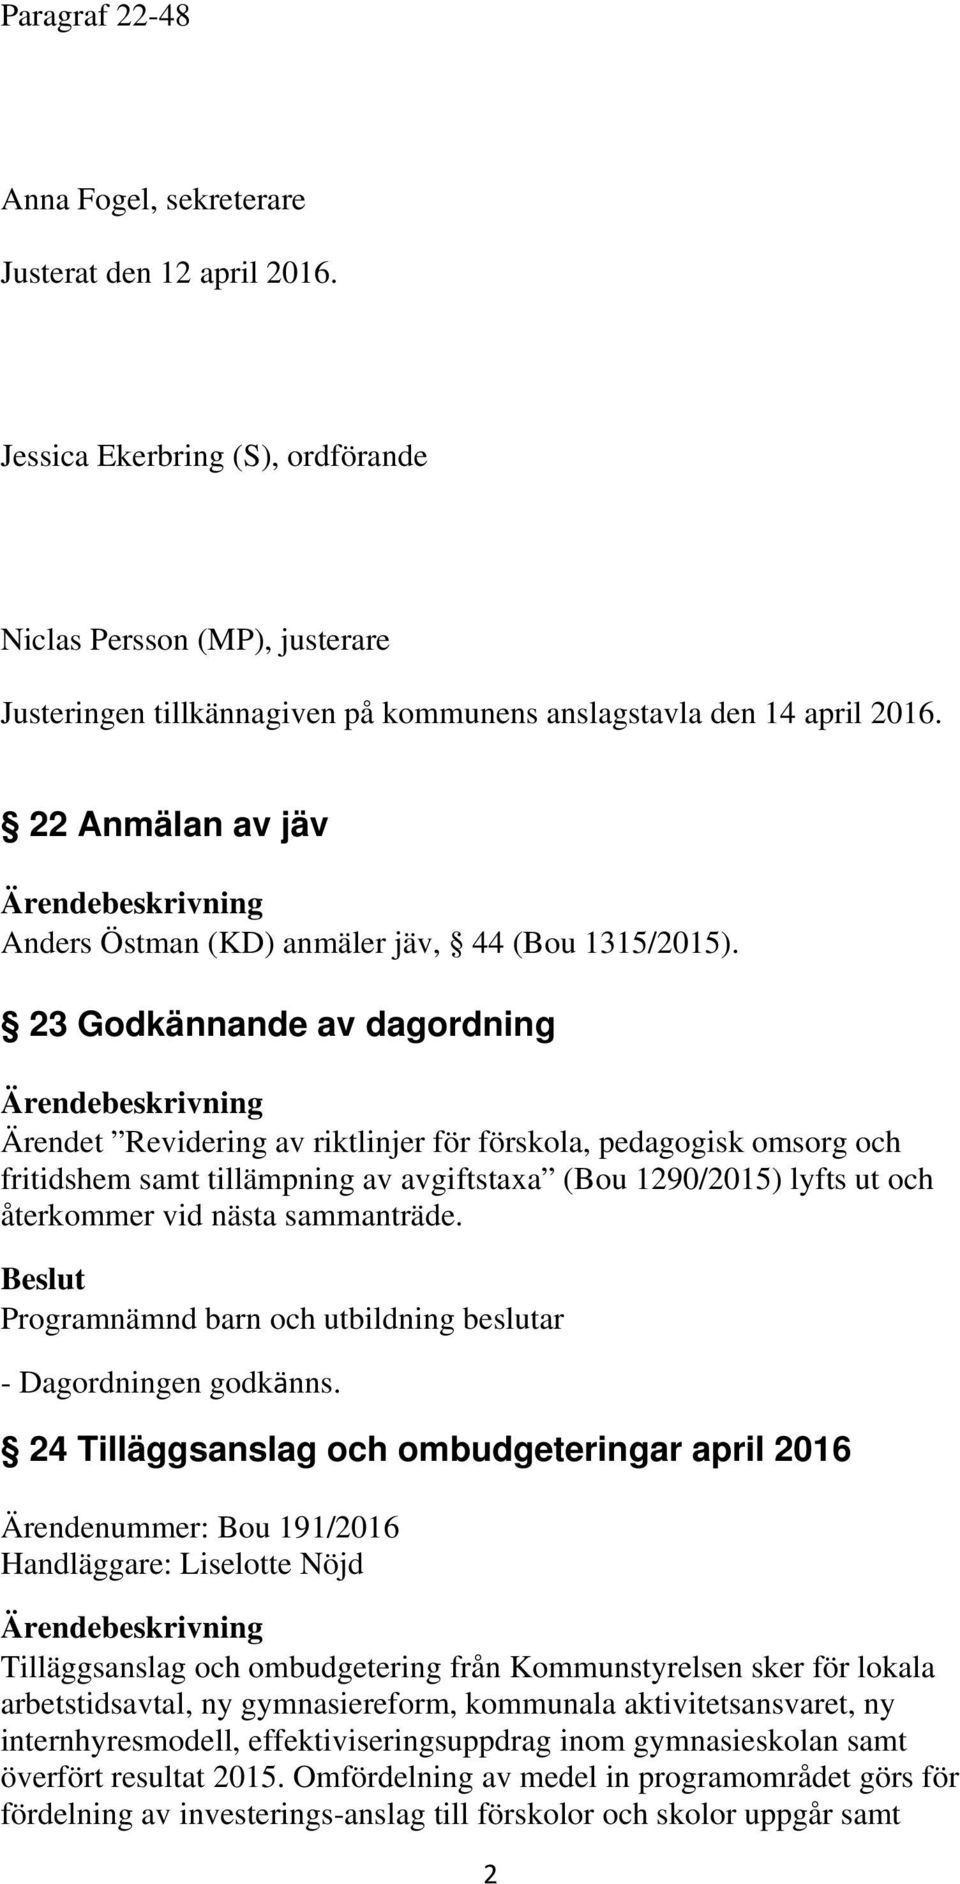 22 Anmälan av jäv Anders Östman (KD) anmäler jäv, 44 (Bou 1315/2015).